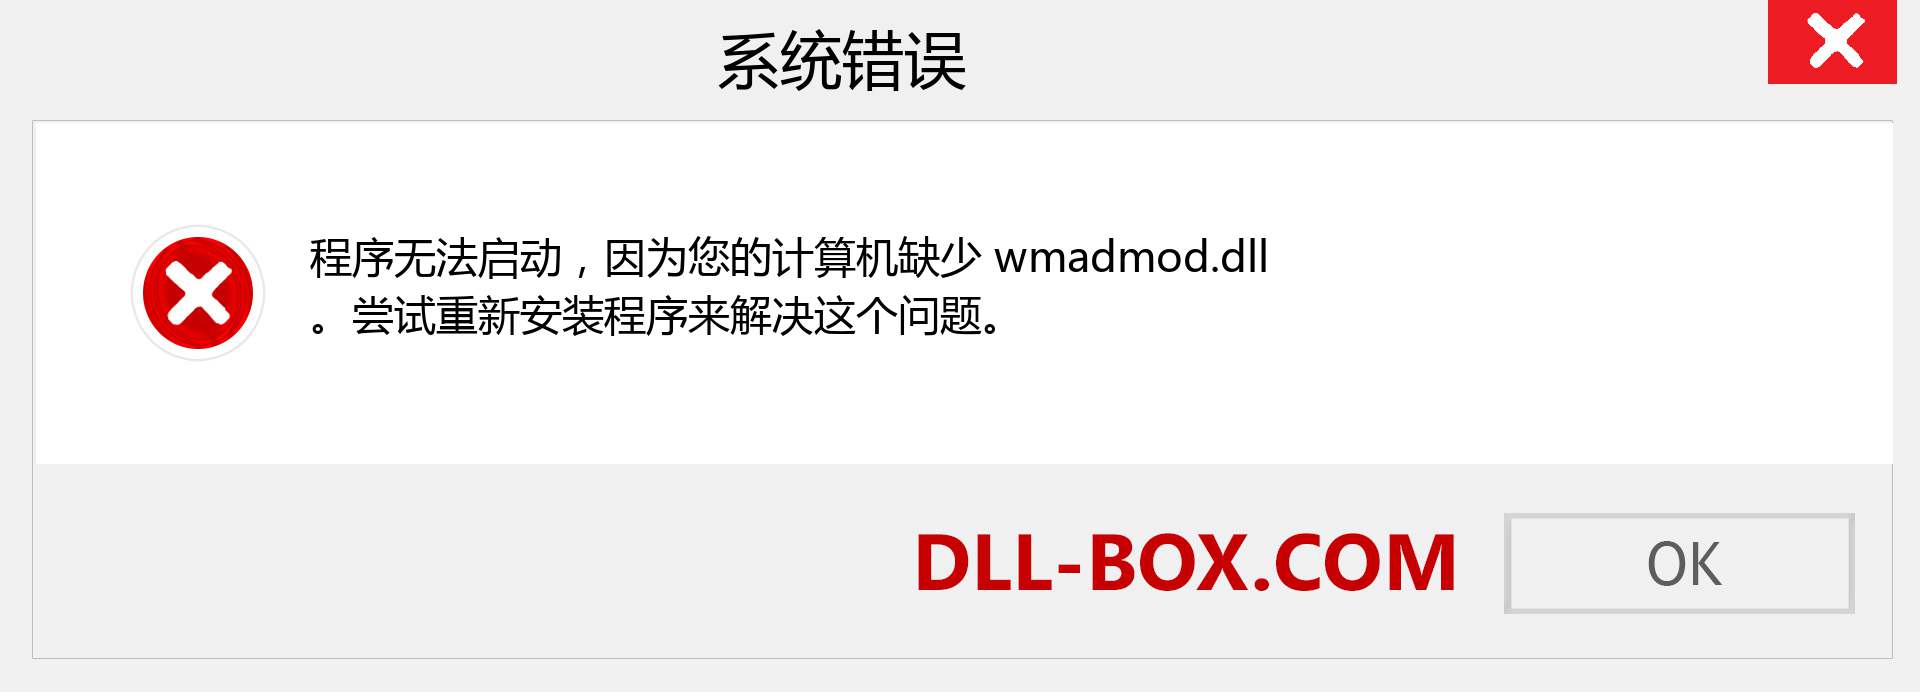 wmadmod.dll 文件丢失？。 适用于 Windows 7、8、10 的下载 - 修复 Windows、照片、图像上的 wmadmod dll 丢失错误